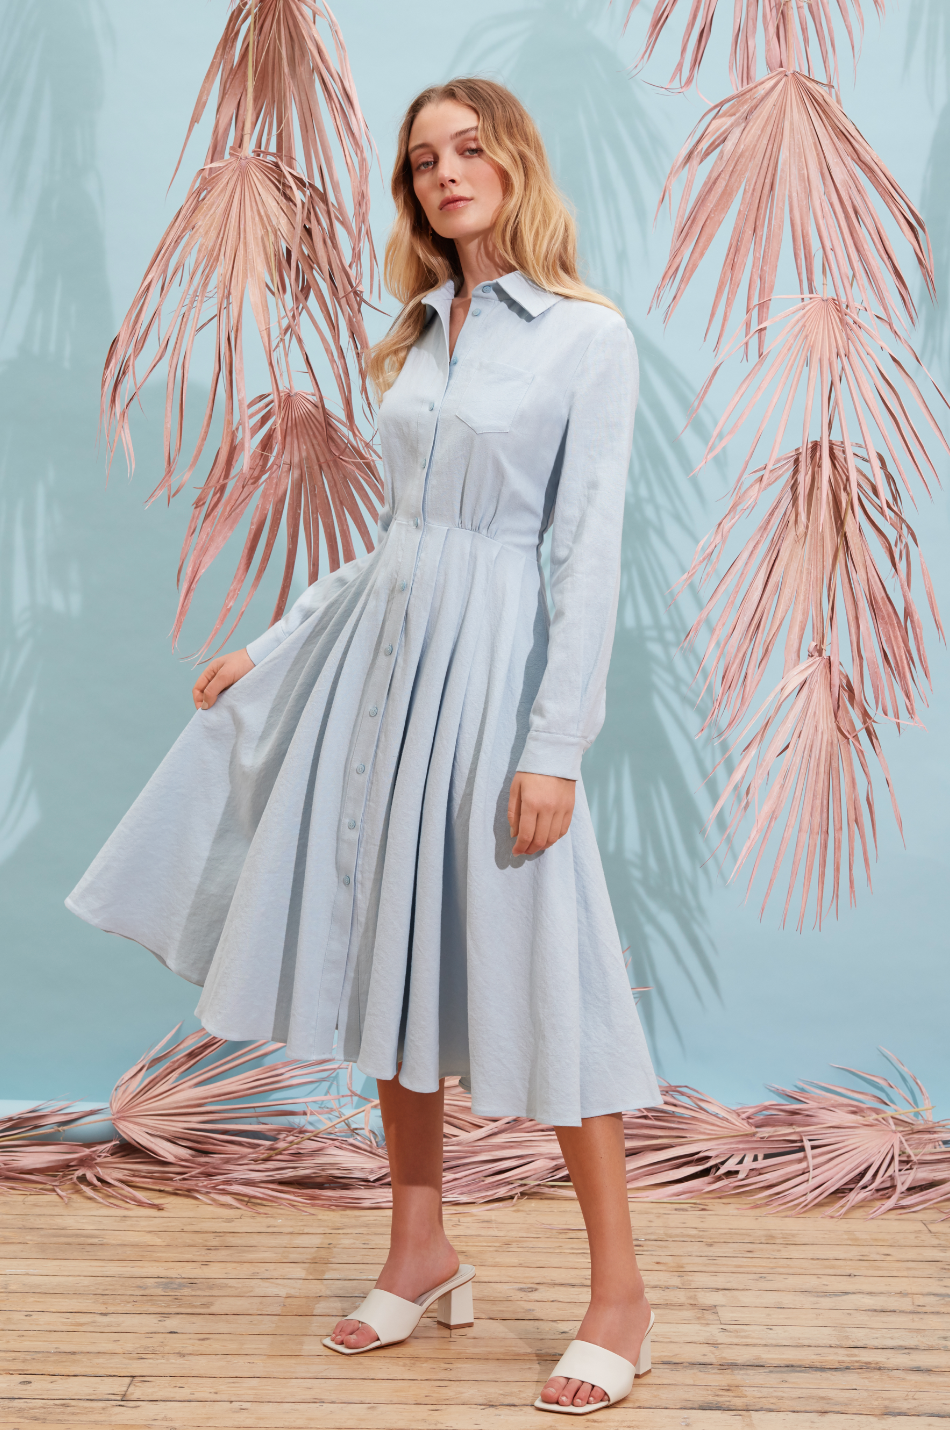 A Mere Co. - Linen Dress - Size S